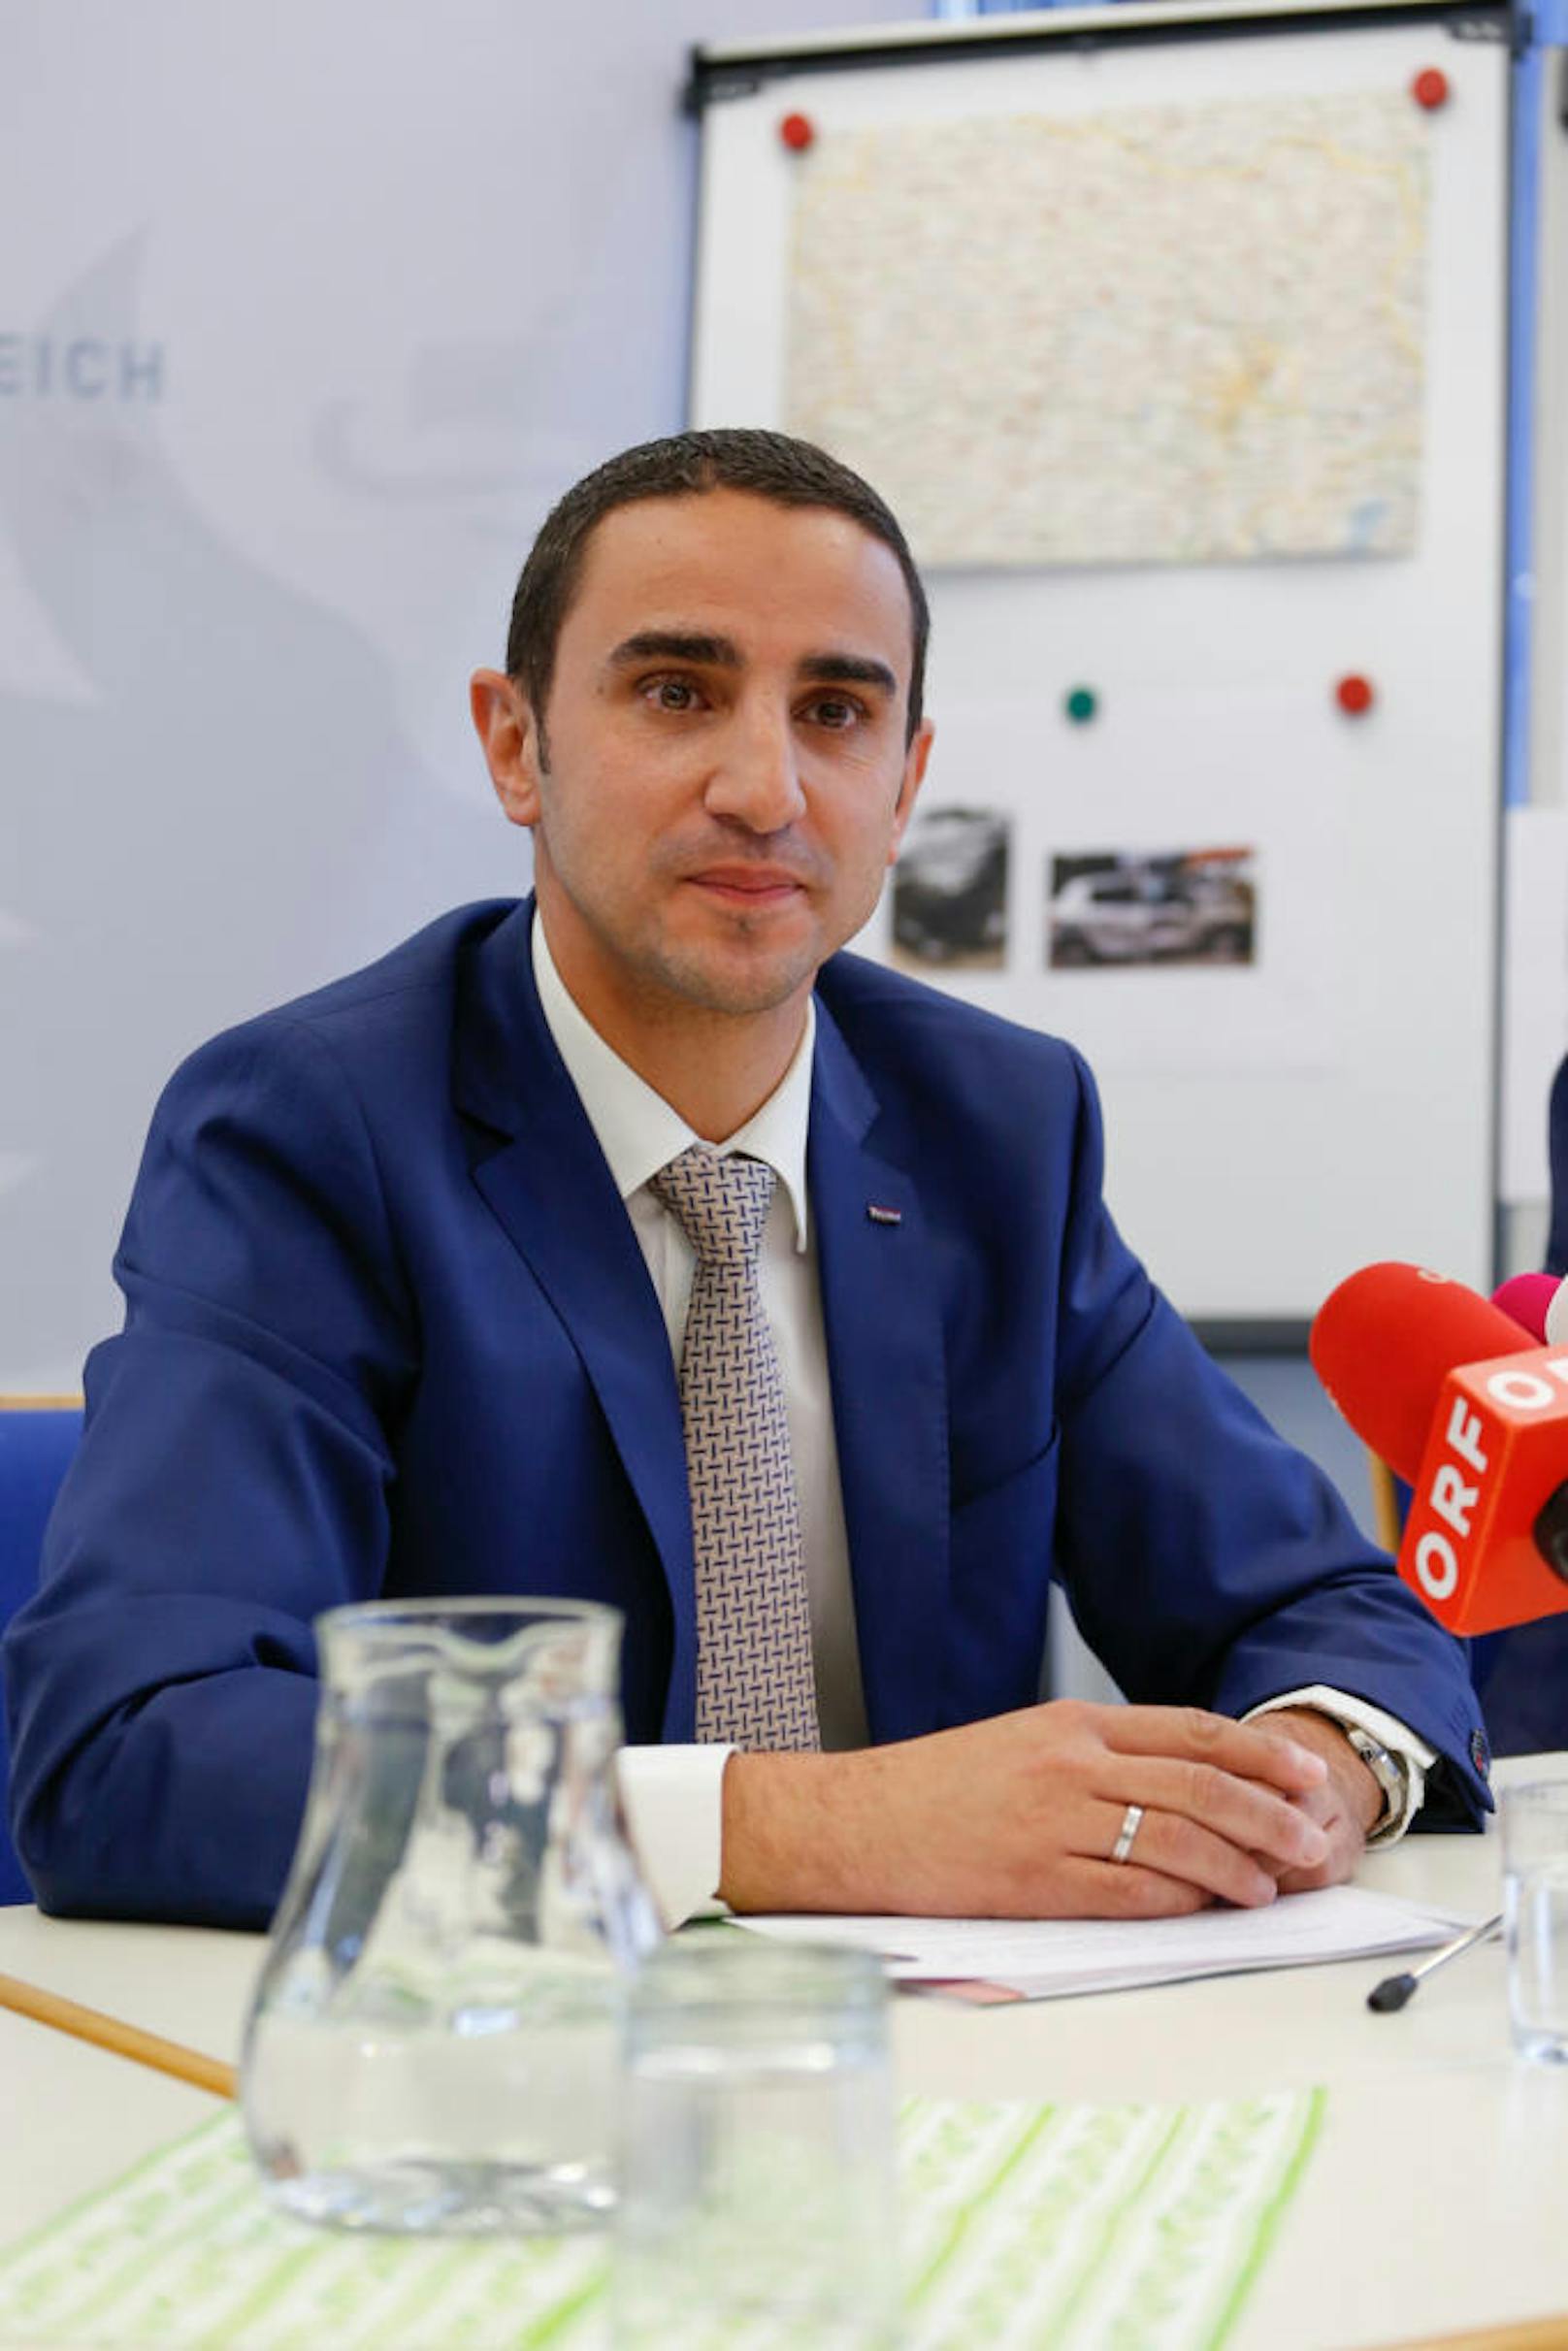 Chef des Landeskriminalamtes NÖ, Omar Haijawi-Pirchner informierte über den Ermittlungserfolg seines Teams.